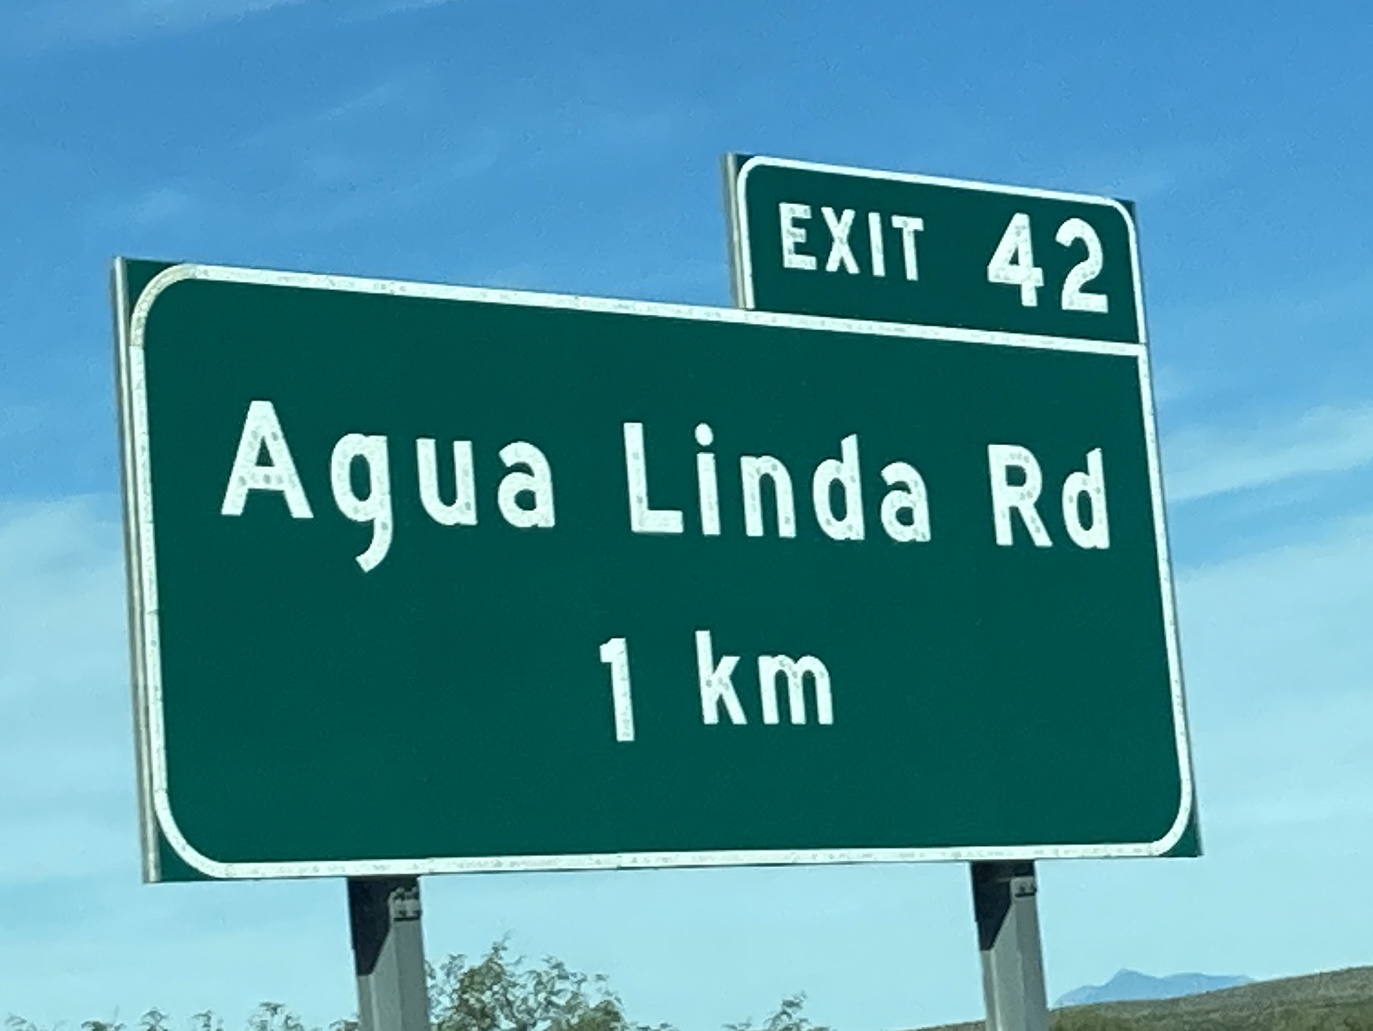 I19N/Agua Linda